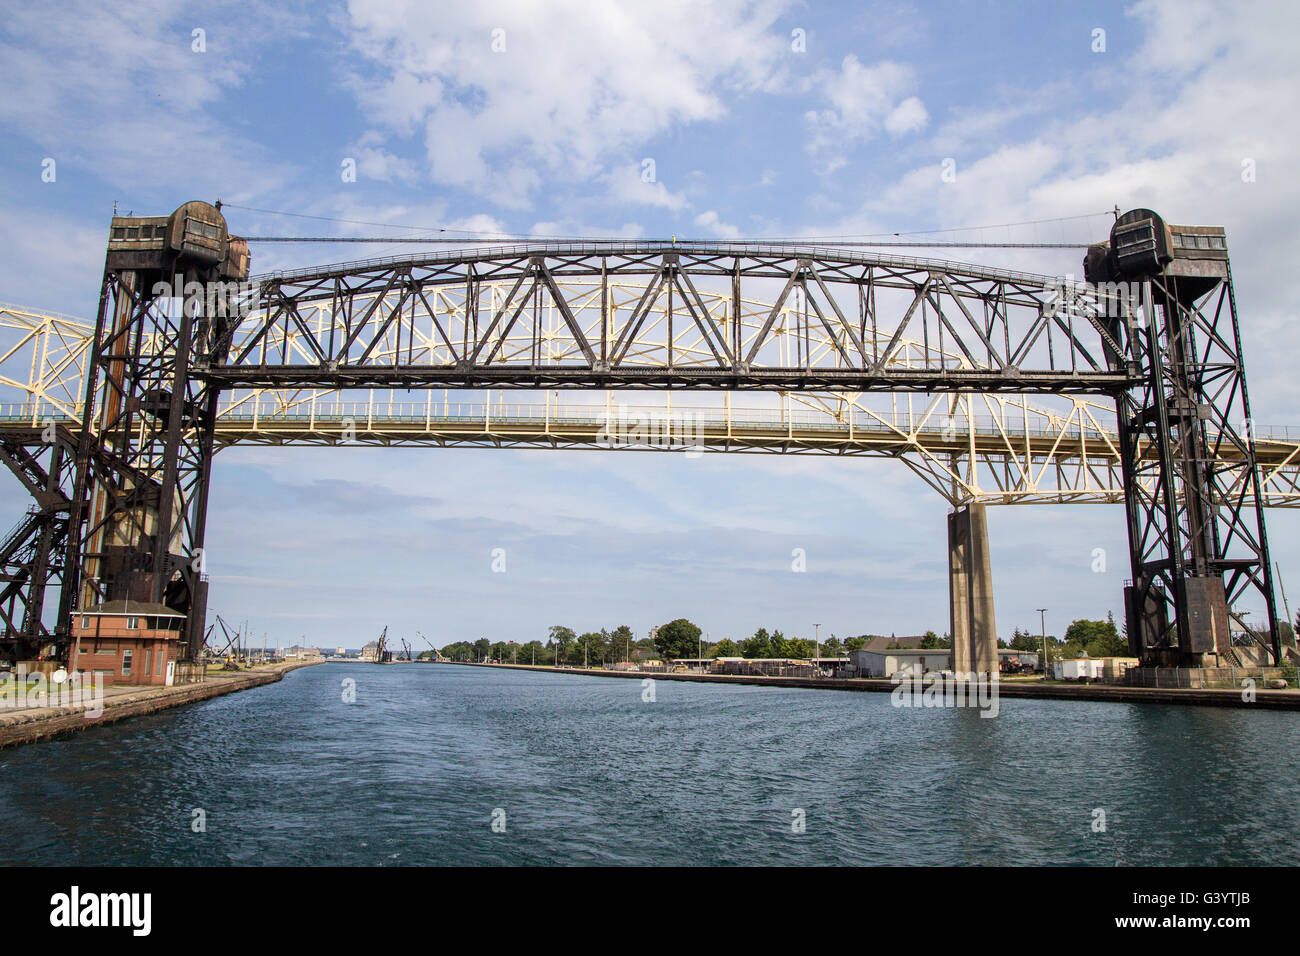 Die Sault Ste. Marie internationale Brücke überspannt die St. Mary's River zwischen Sault Ste. Marie, Michigan und Ontario, Kanada. Stockfoto